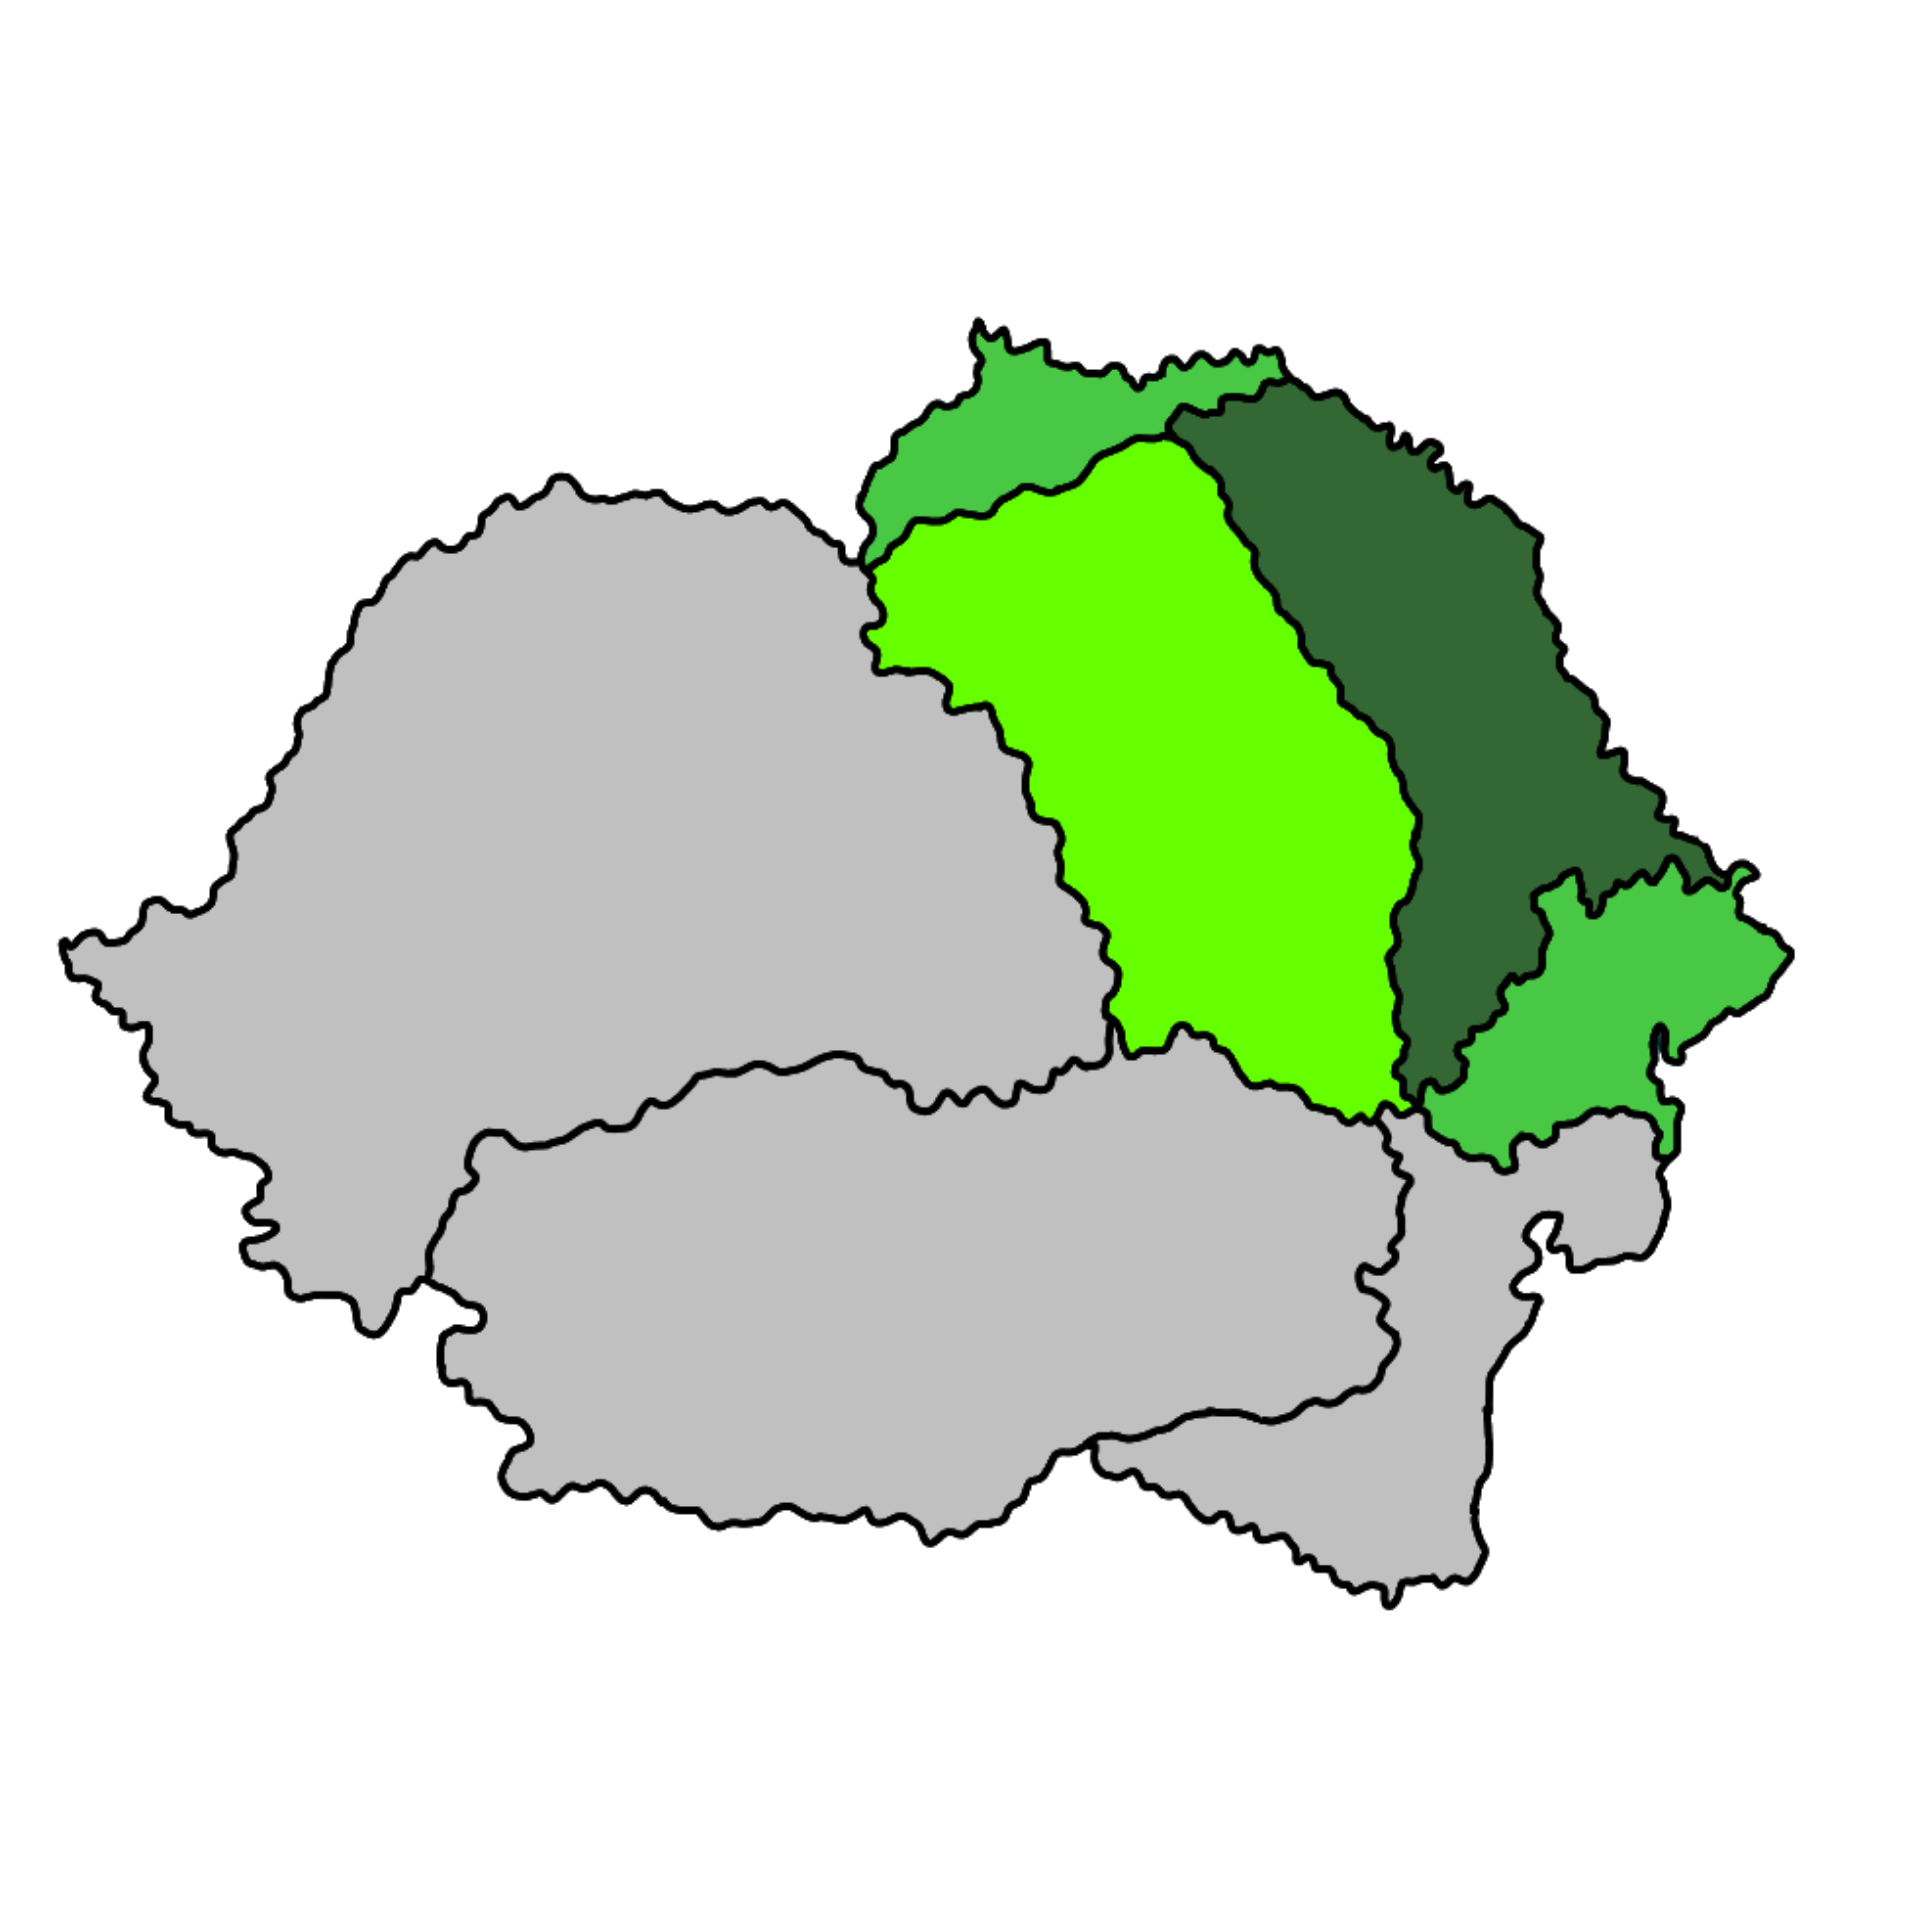 Moldova_a_Rom%C3%A1n_Kir%C3%A1lys%C3%A1gon_bel%C3%BCl.jpg